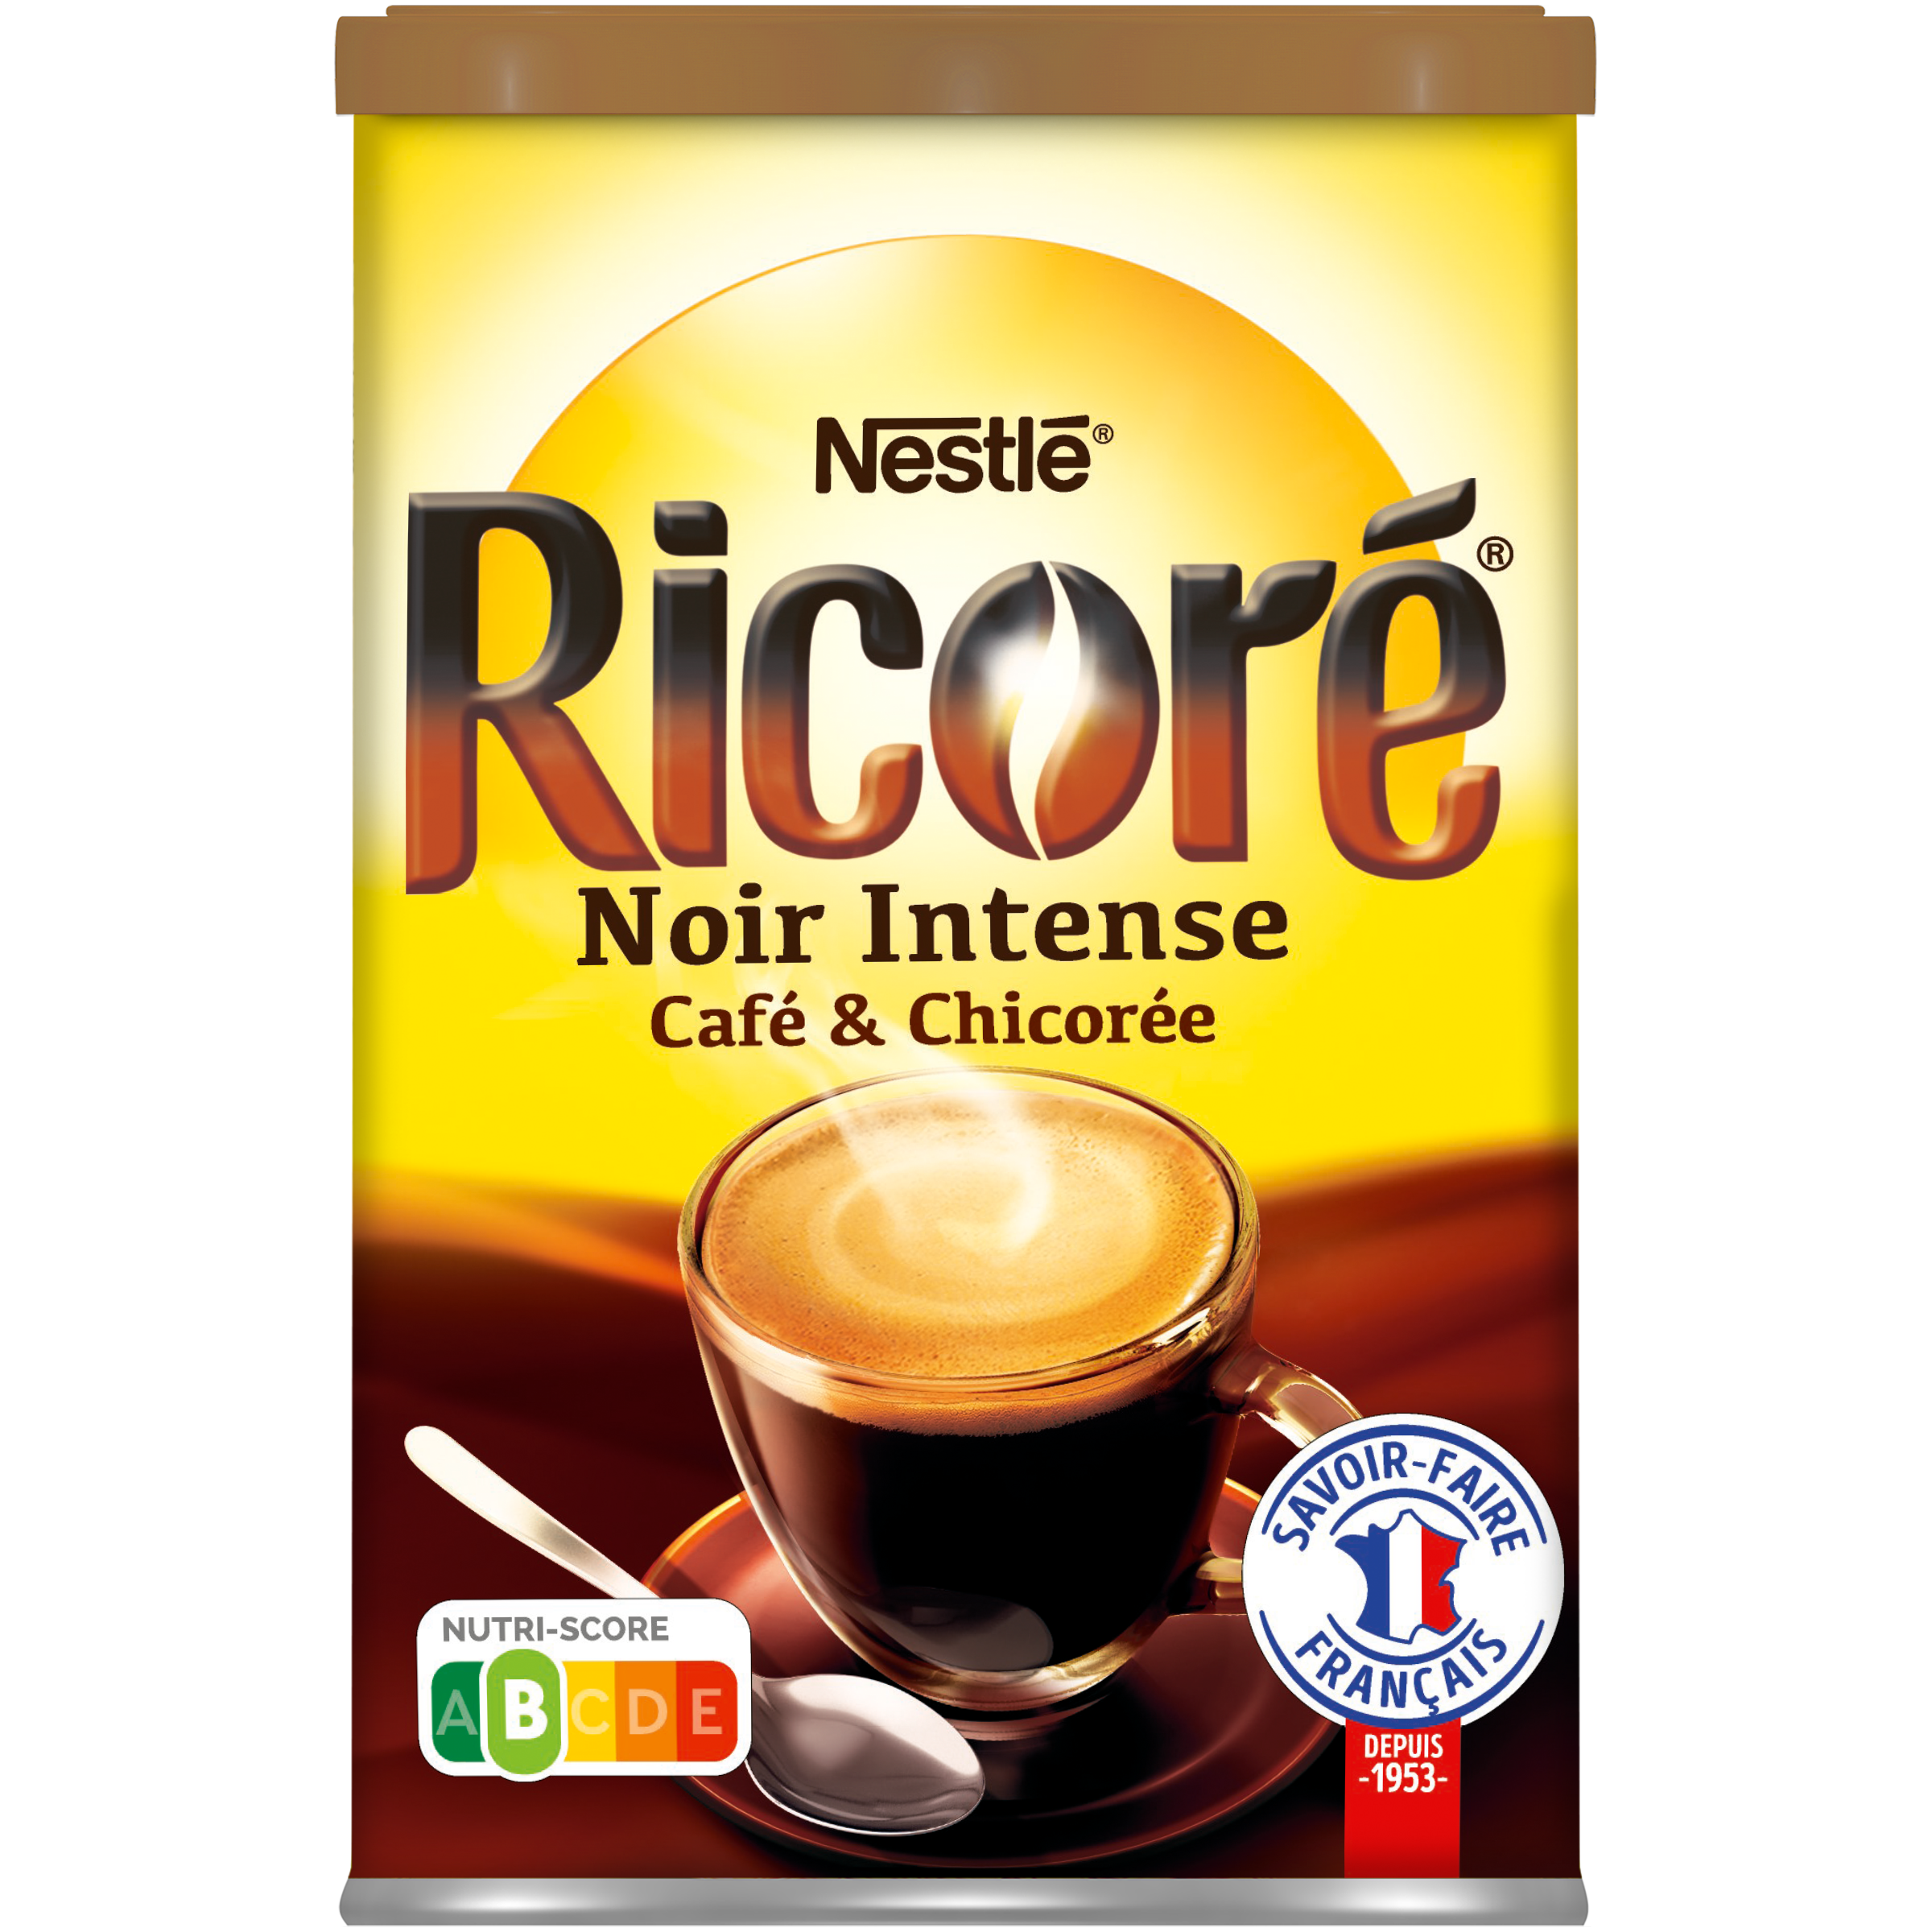 RICORE Noir Intense, Café & Chicorée, Boîte 240g - Nestlé - 240 g